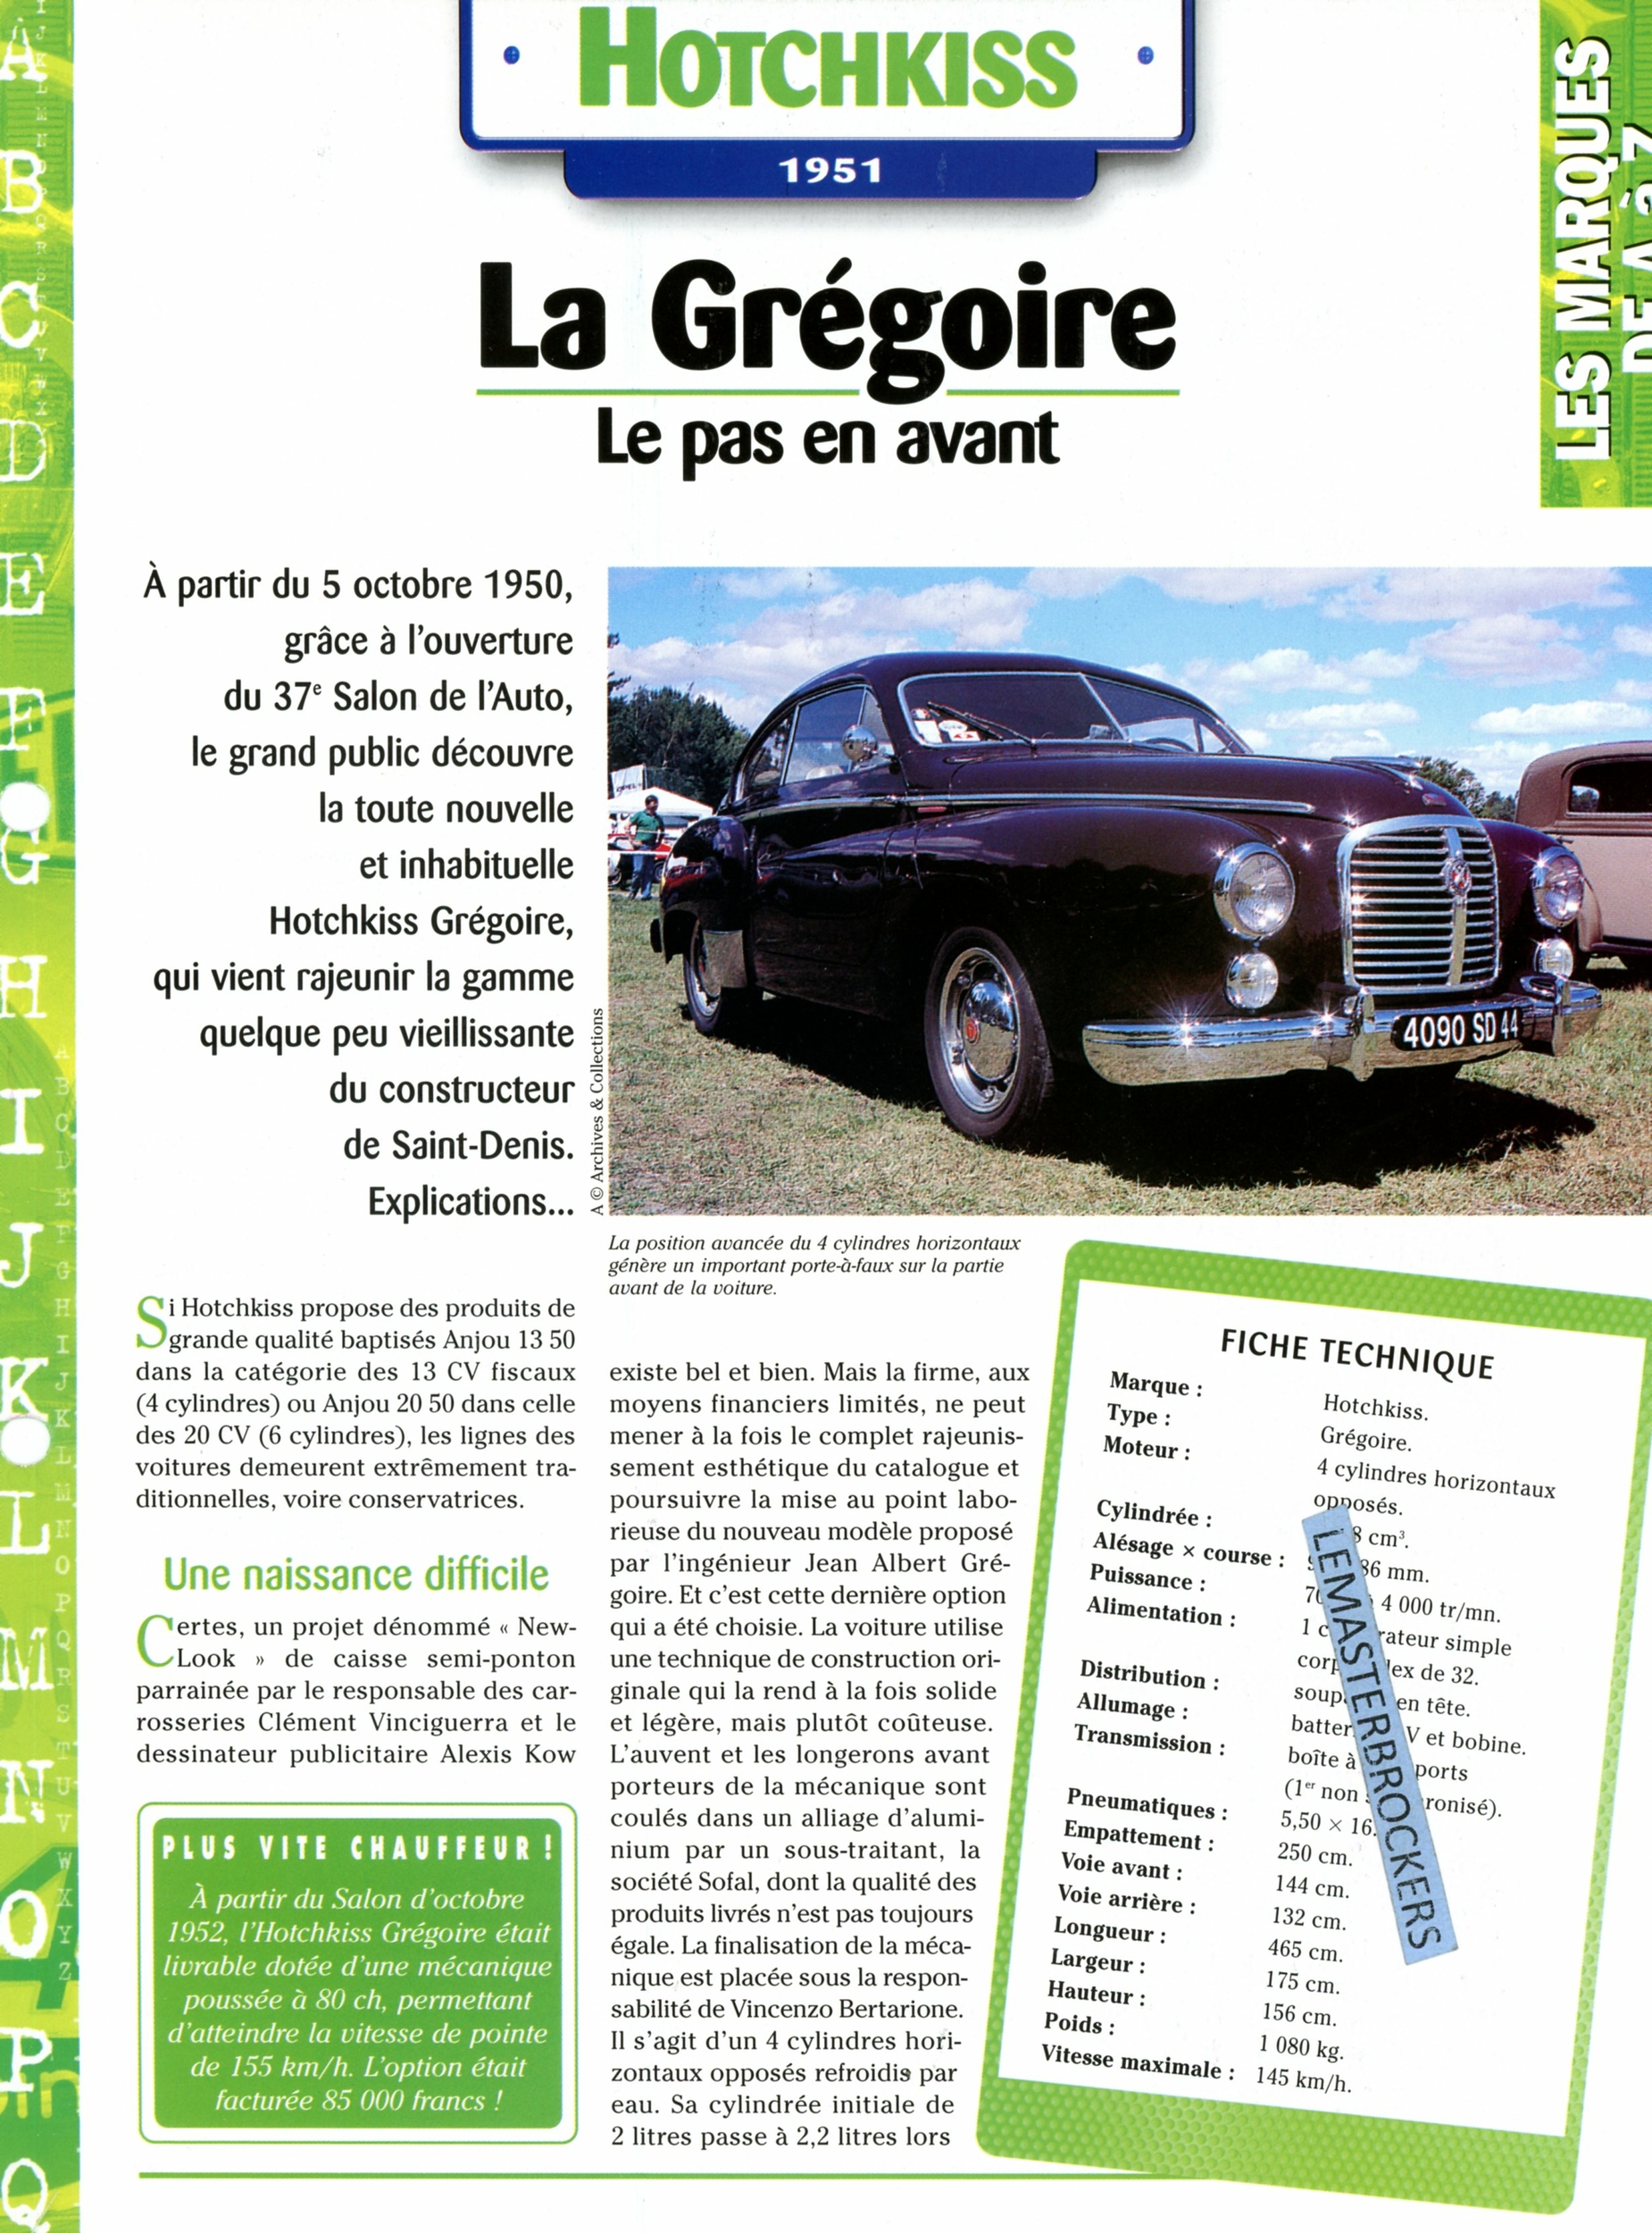 HOTCHKISS GRÉGOIRE 1951 - FICHE AUTO COLLECTION HACHETTE - FICHE TECHNIQUE